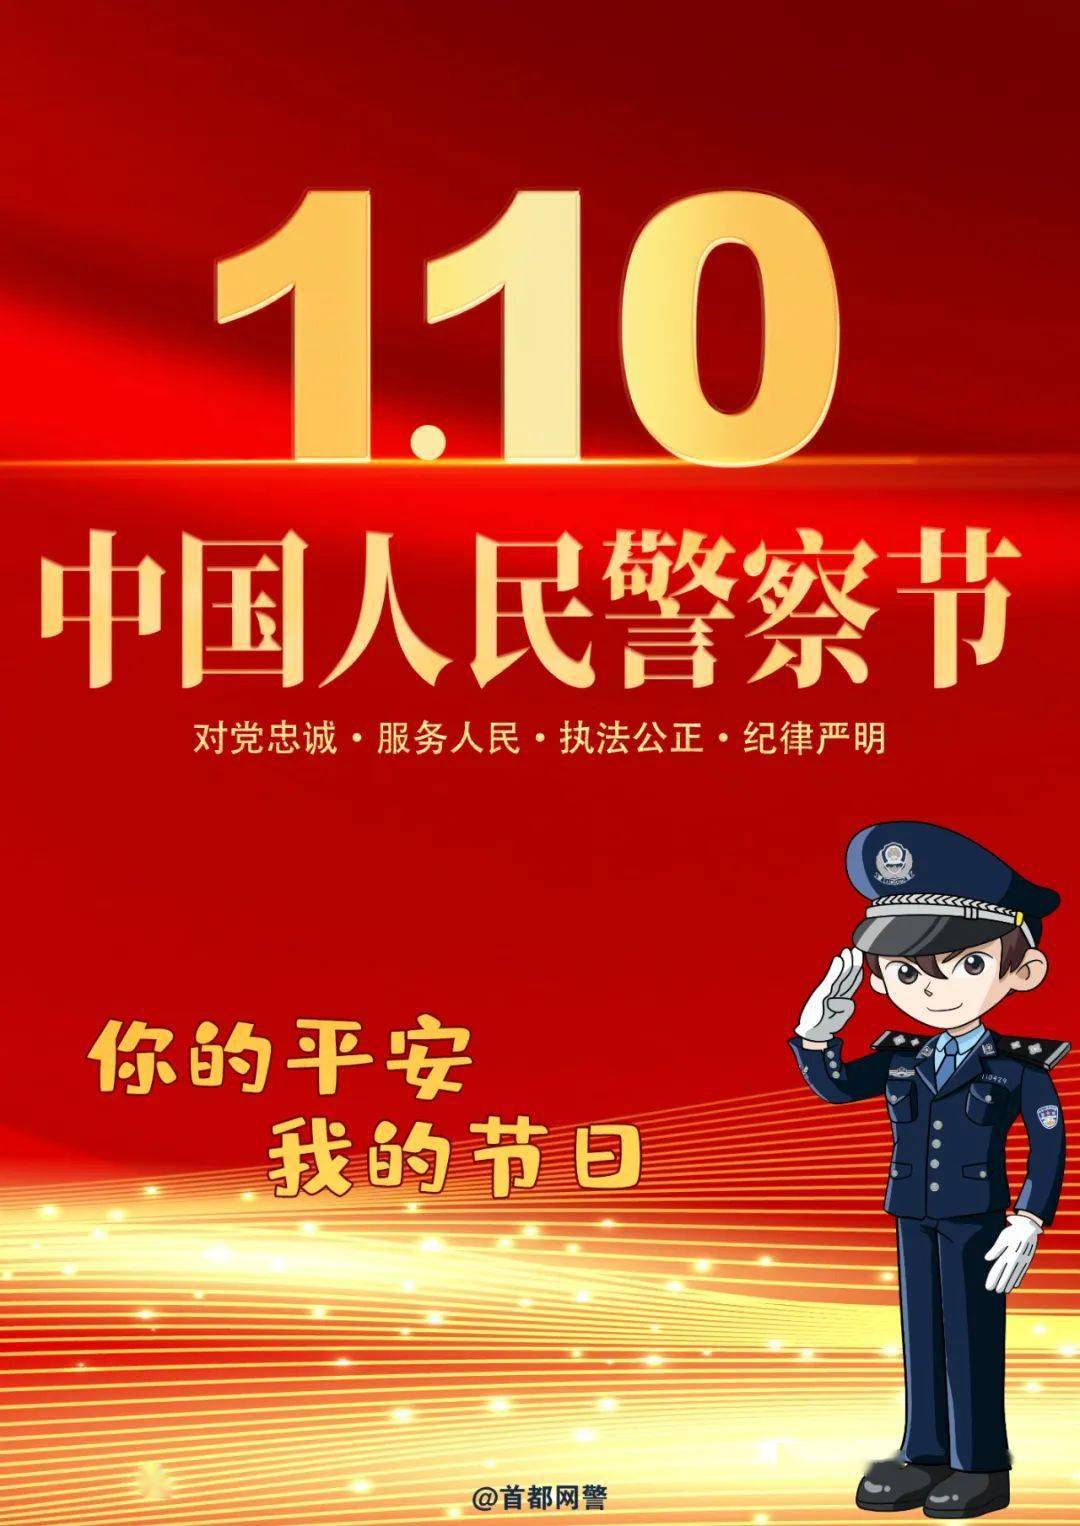 110警察节祝福语图片